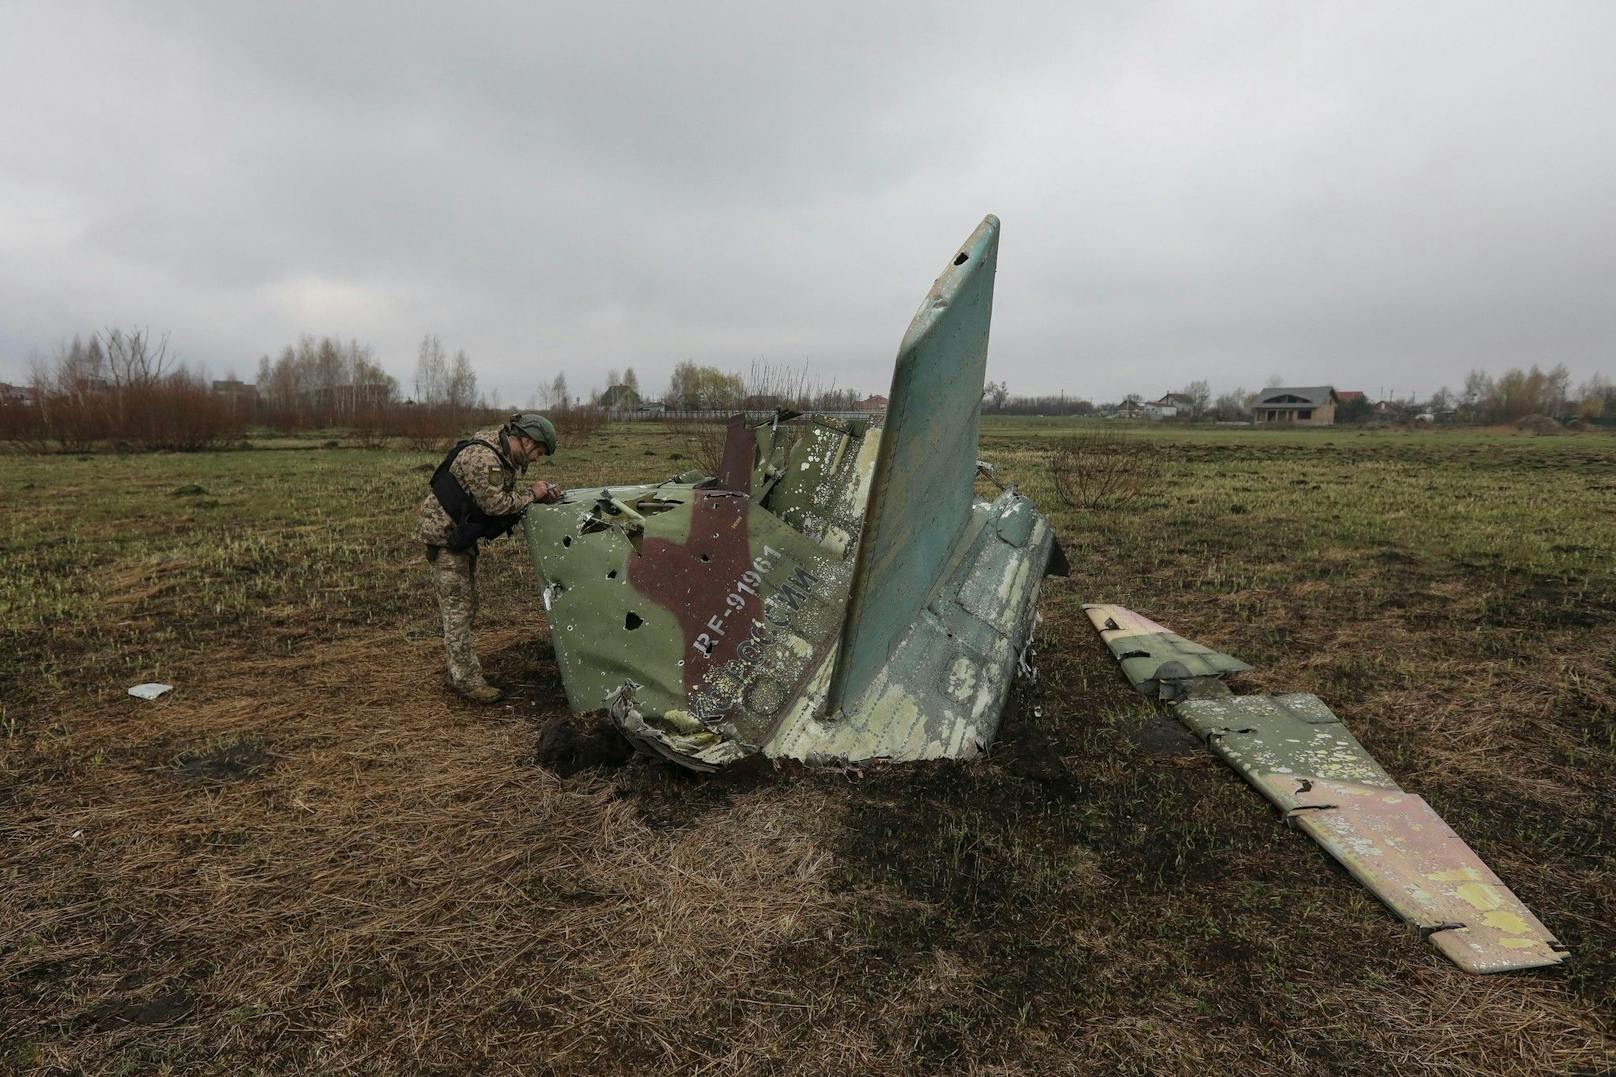 Ukrainische Truppen haben am Samstag nach eigenen Angaben zwei russische Kampfflugzeuge und mehrere Drohnen abgeschossen.